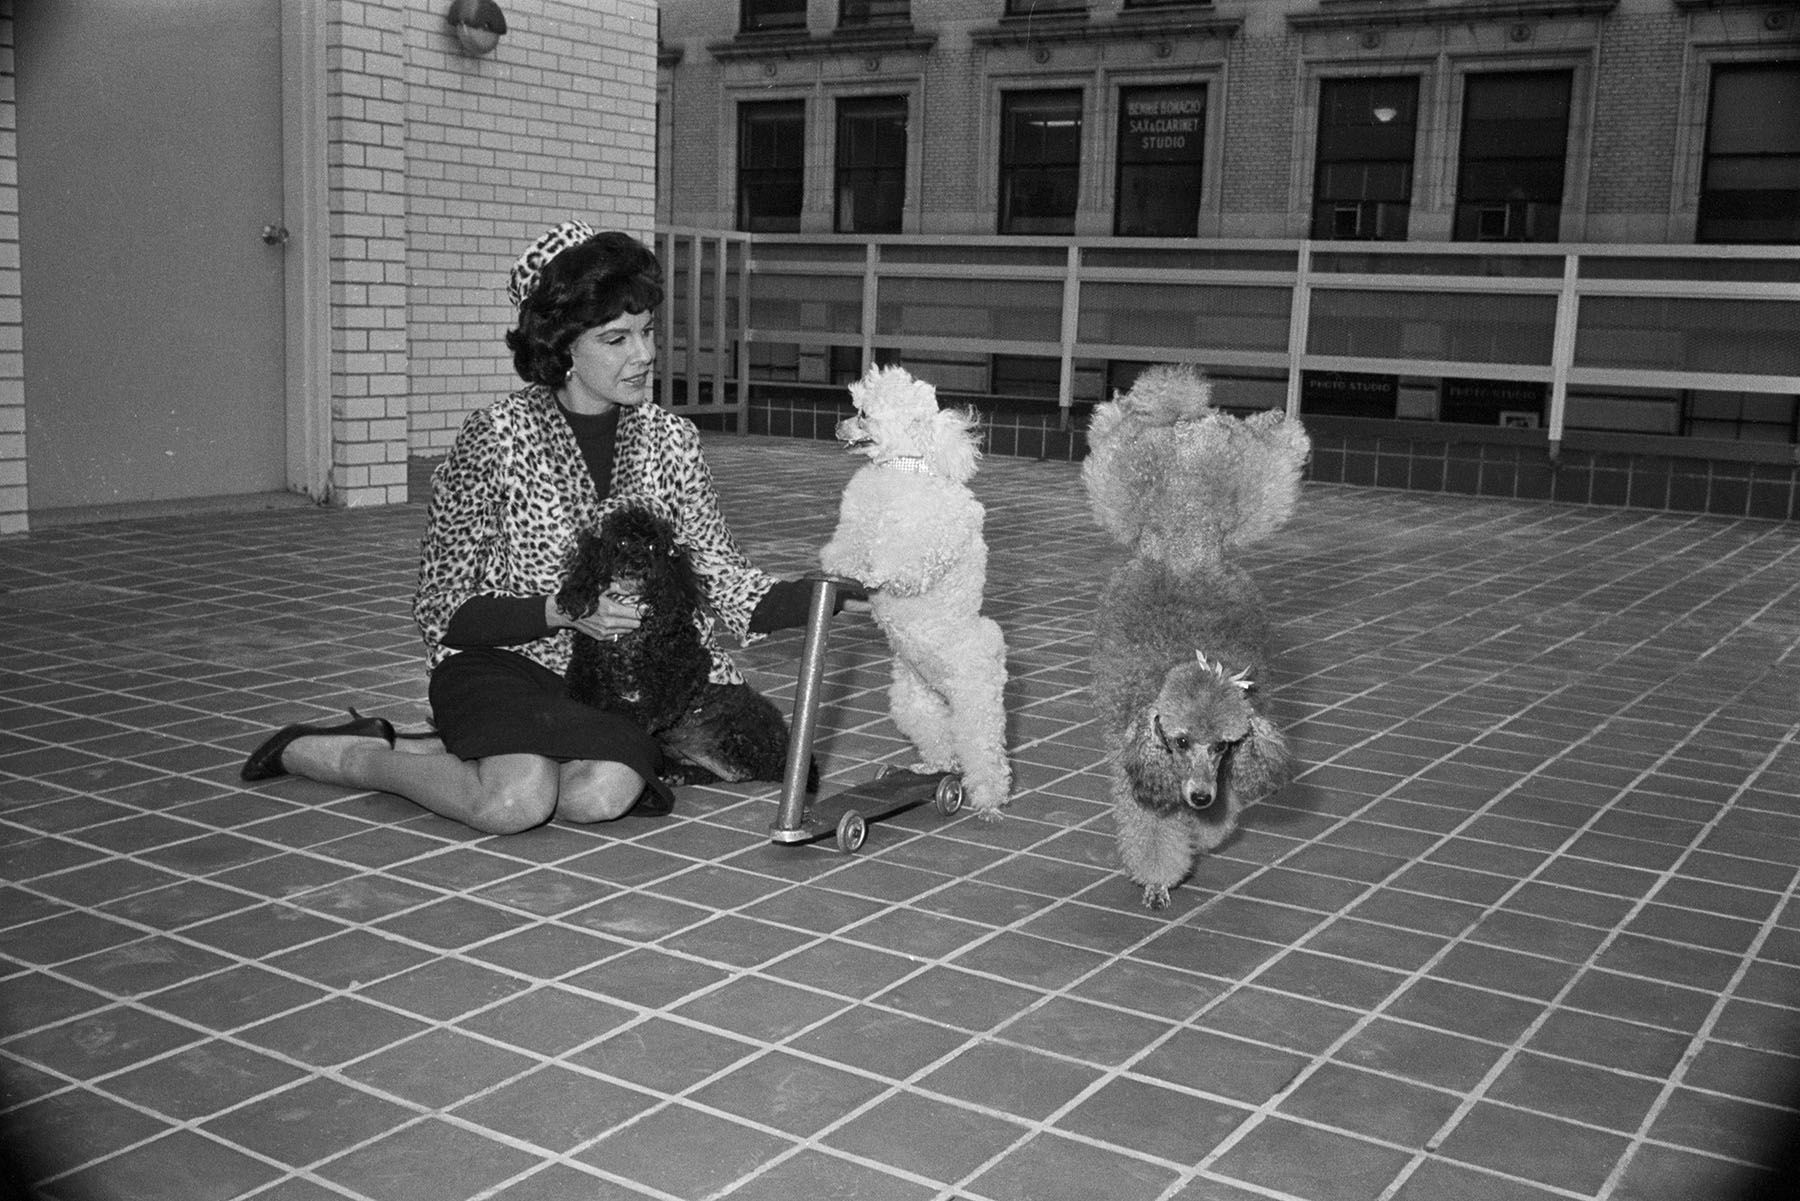 Жаклин Сьюзанн со своими пуделями в 1963 году. Источник: luxfon.com